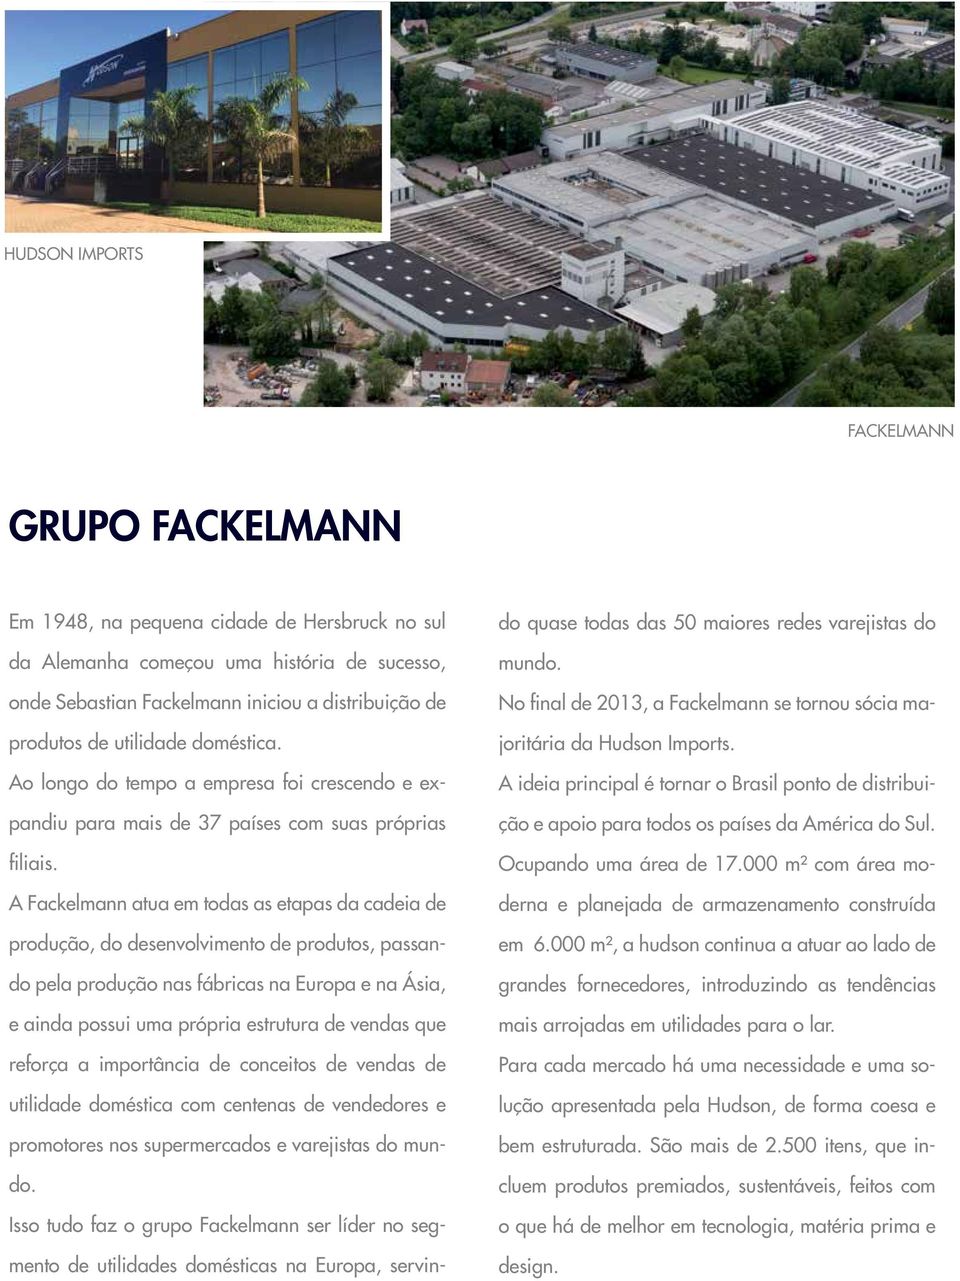 A Fackelmann atua em todas as etapas da cadeia de produção, do desenvolvimento de produtos, passando pela produção nas fábricas na Europa e na Ásia, e ainda possui uma própria estrutura de vendas que